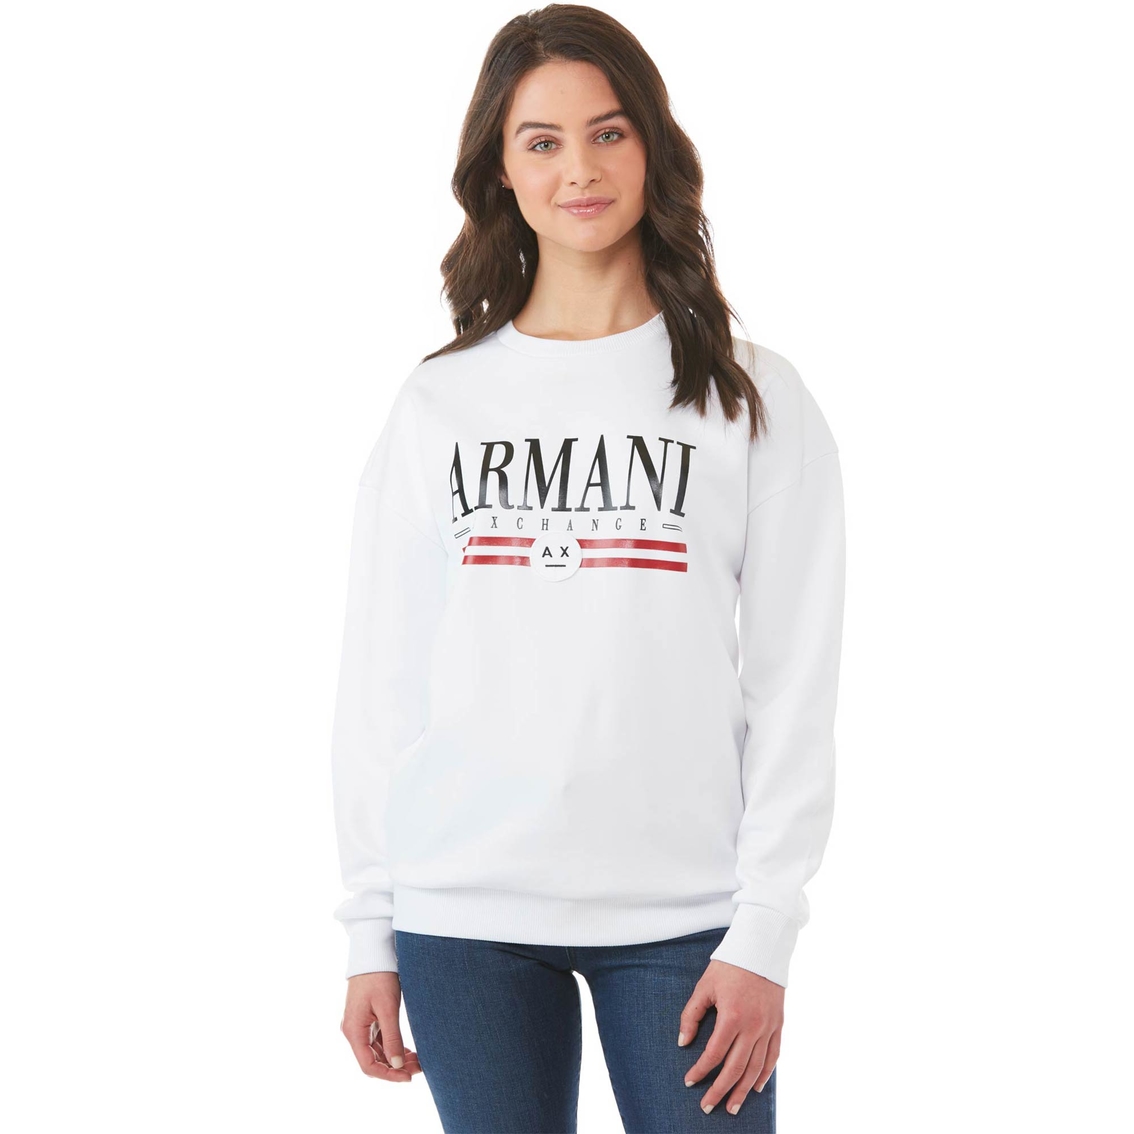 Armani Exchange Crew Neck Logo Sweatshirt | Hoodies & Sweatshirts |  Clothing & Accessories | Shop The Exchange